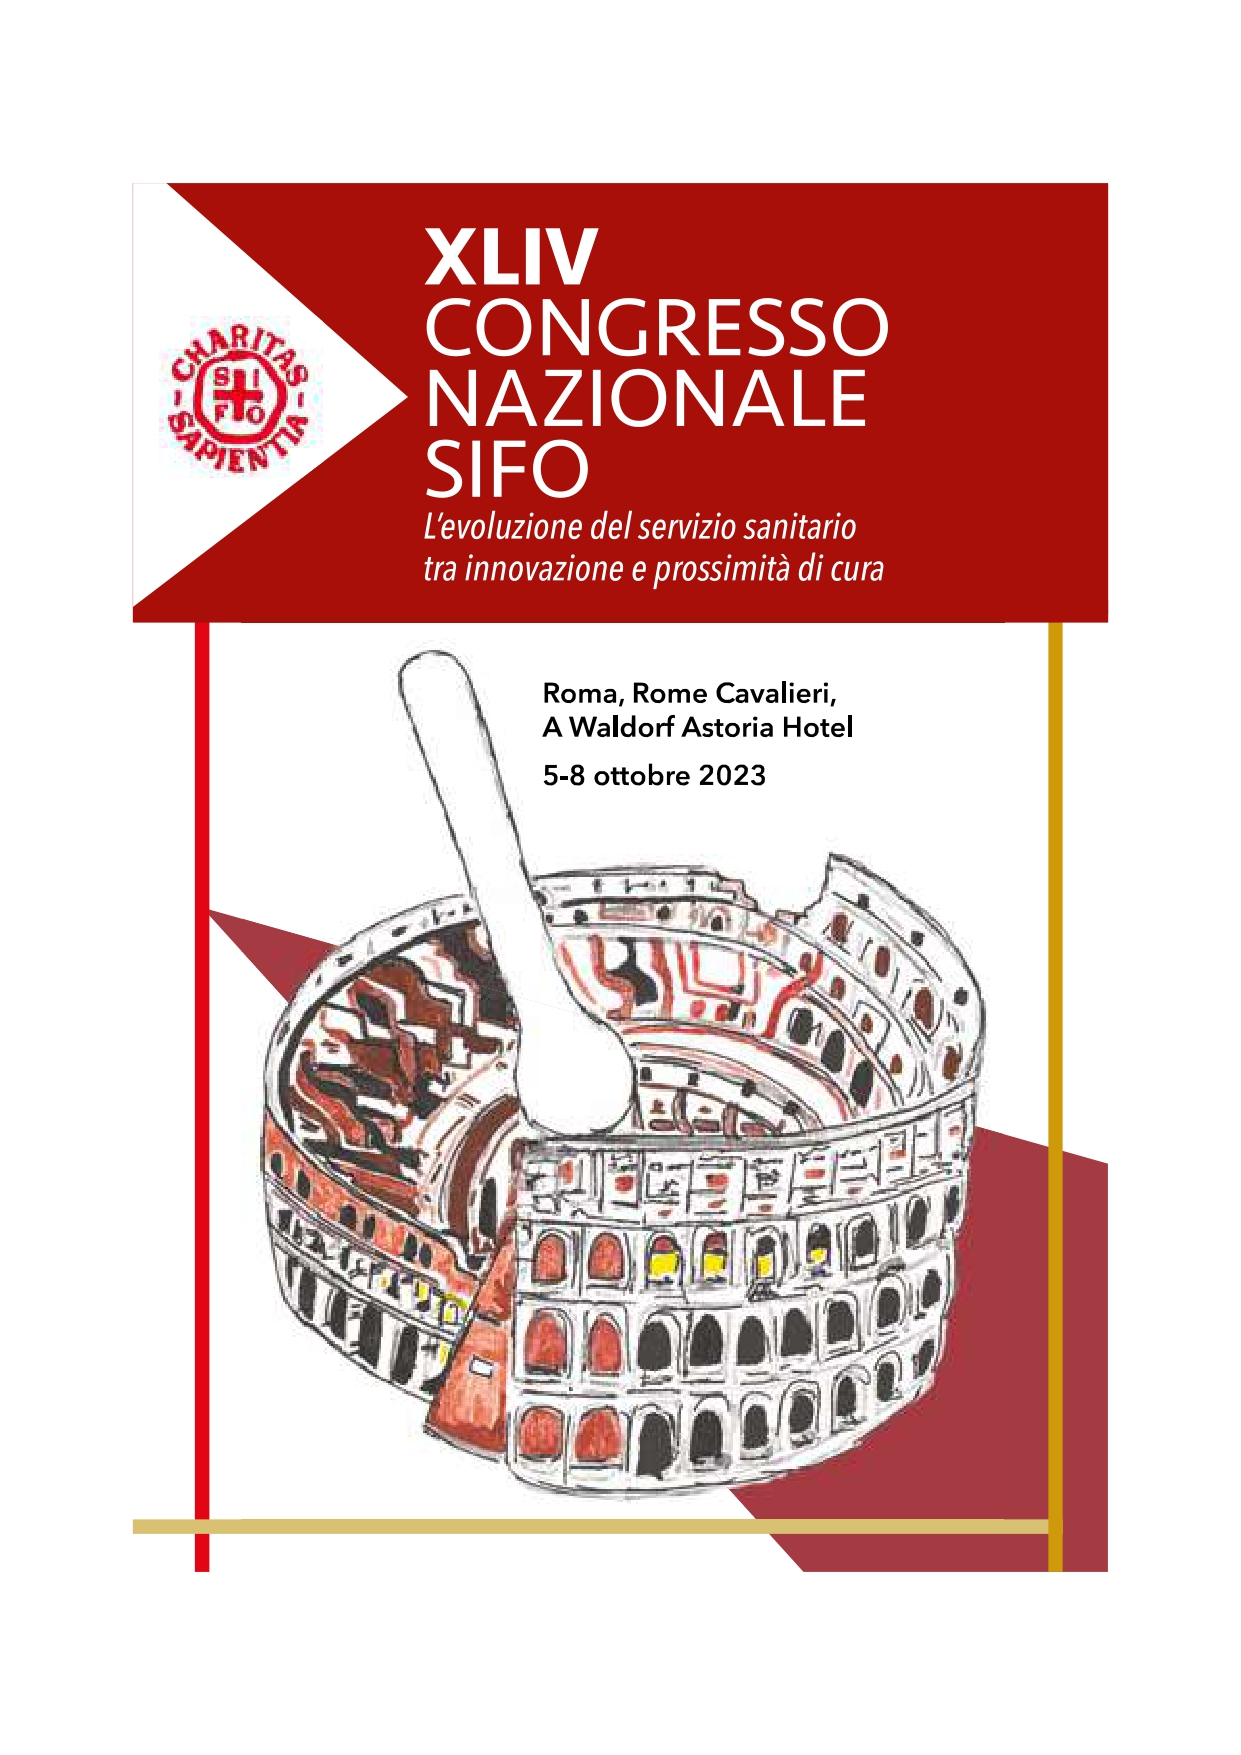 XLIV CONGRESSO NAZIONALE SIFO – ROMA 05-08 OTTOBRE 2023